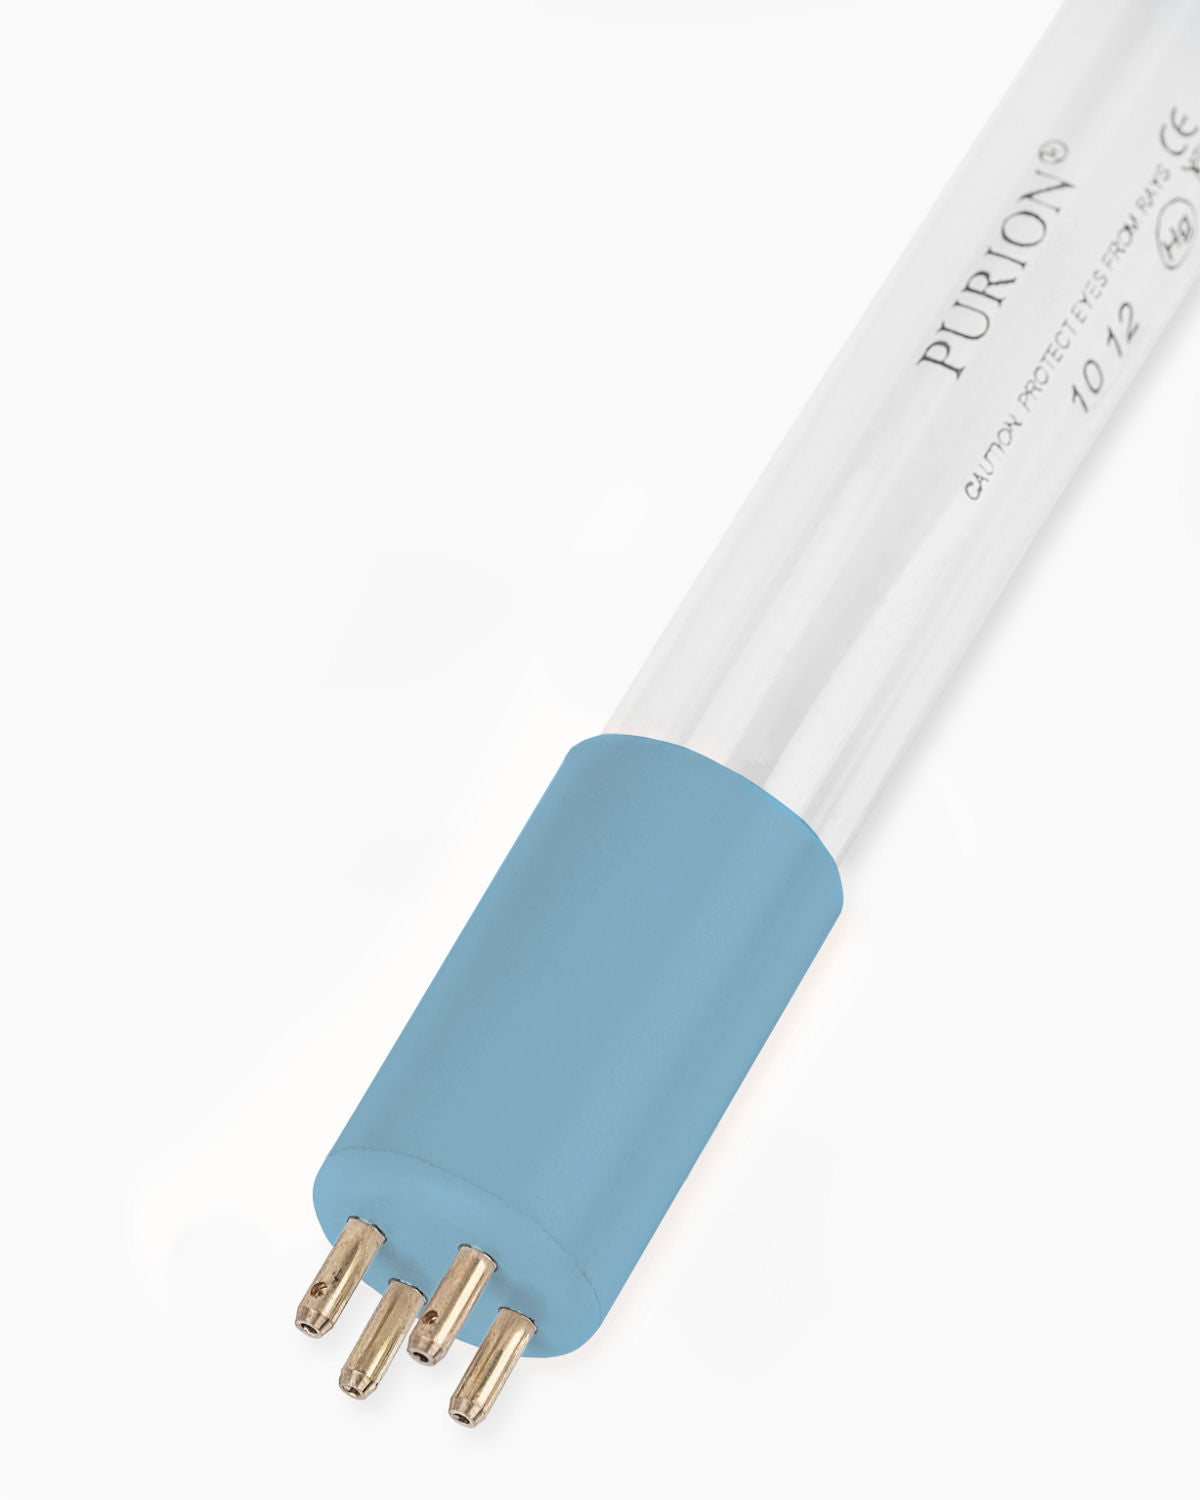 Eine PURION 500 PRO Basic Blaulichtröhre auf weißem Hintergrund. (Marke: PURION GmbH)